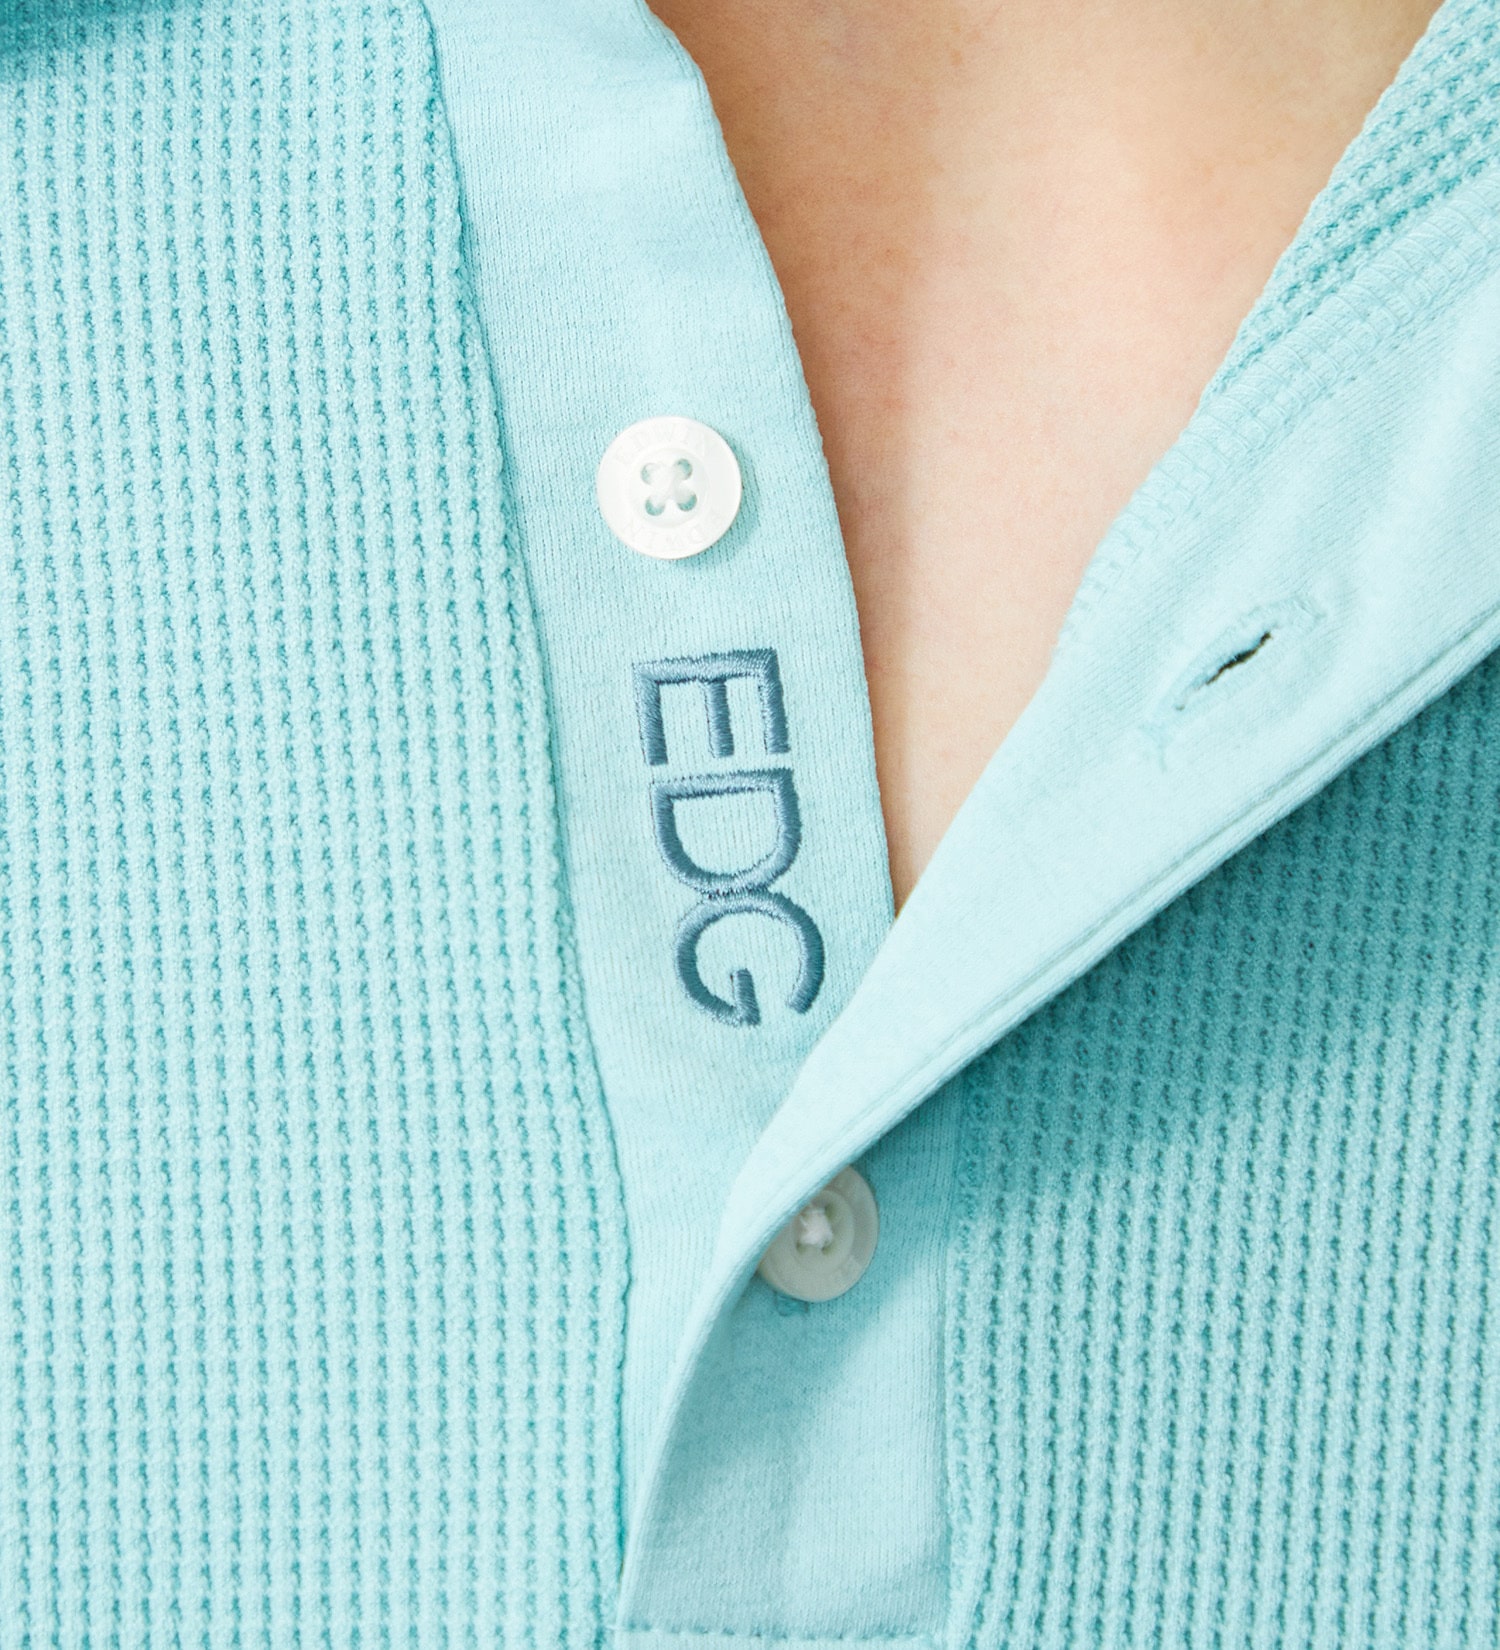 EDWIN(エドウイン)のEDWIN GOLF ミニワッフルポロシャツ半袖Tシャツ|トップス/Tシャツ/カットソー/メンズ|ミント